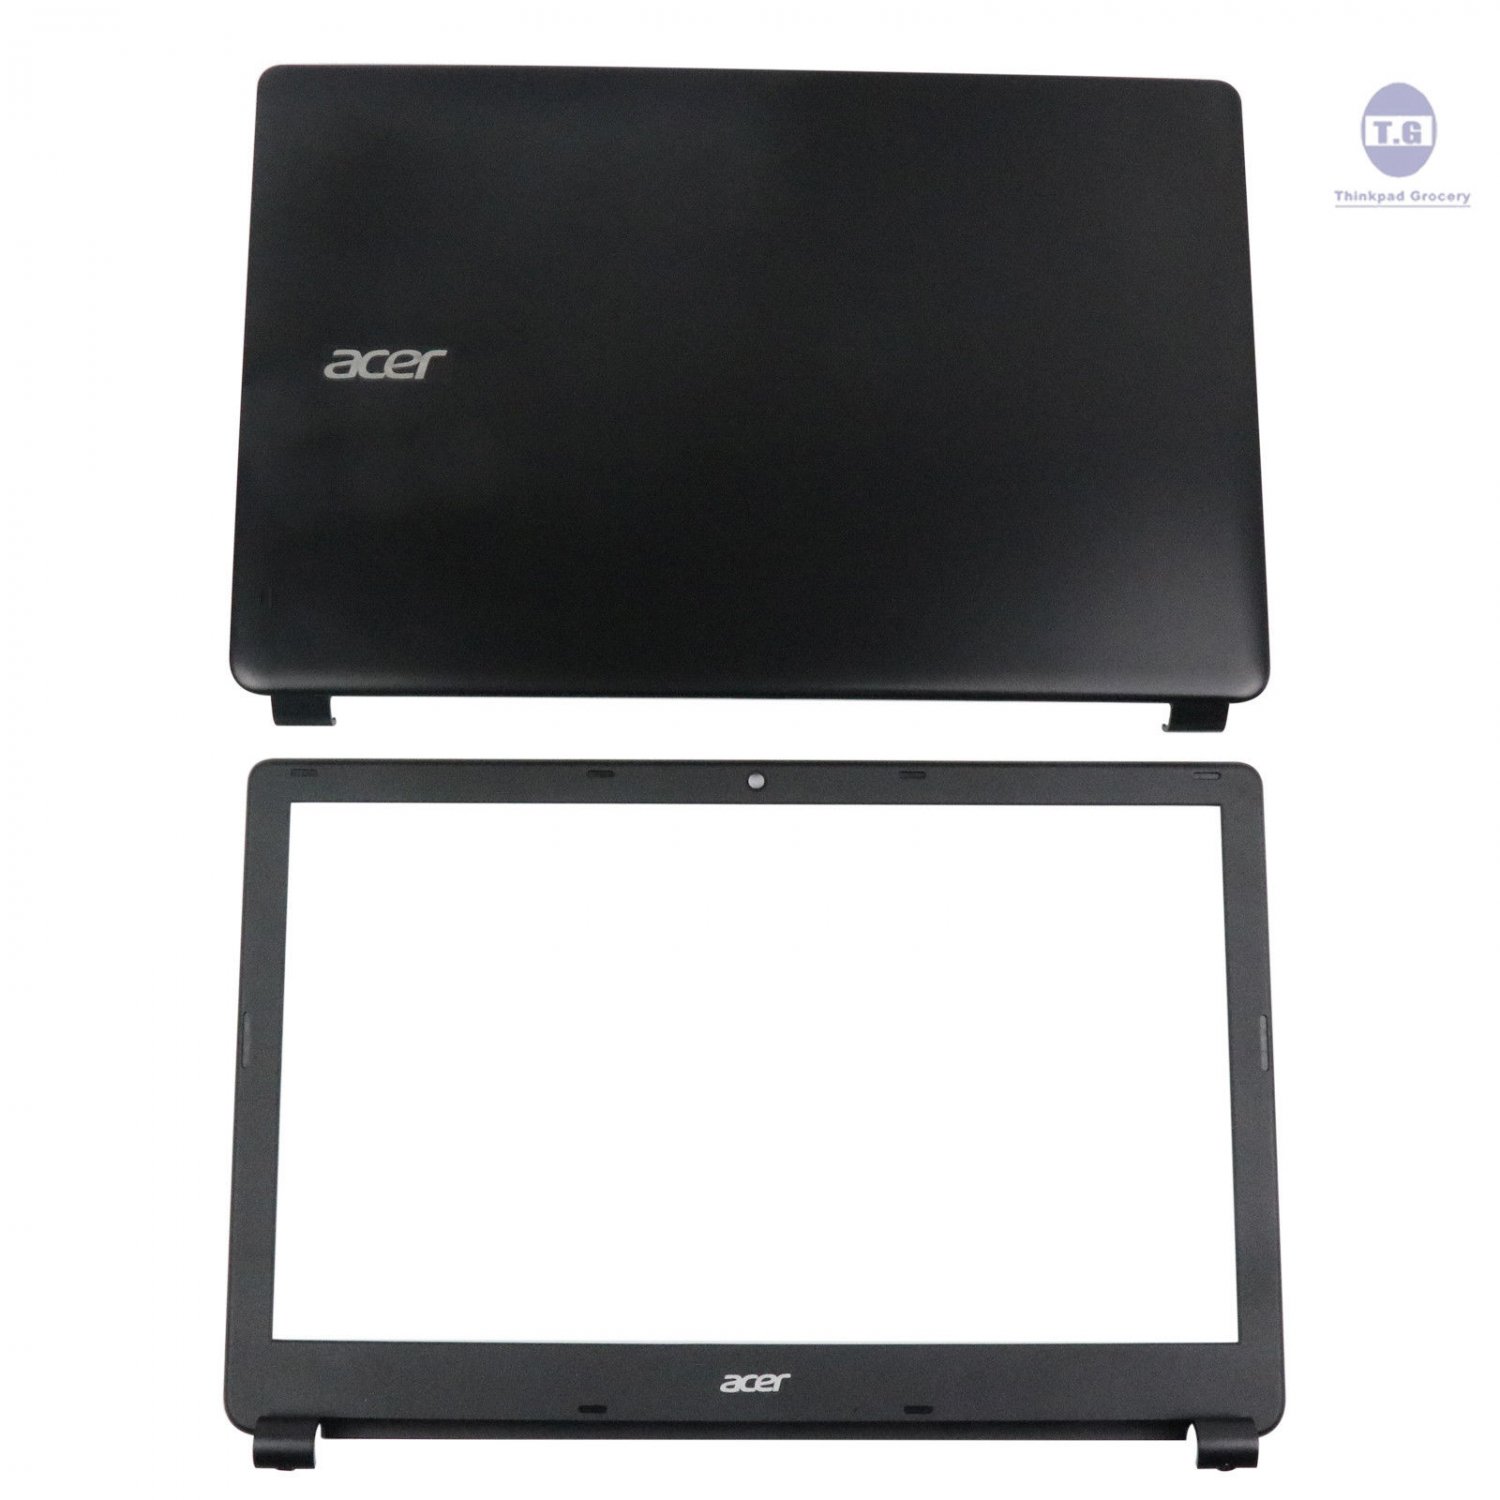 Купить матрицу acer aspire. Acer Aspire v5 561g. E1-572g крышка матрицы. Крышка матрицы для ноутбука e1-570g. Acer Aspire v5 572 матрица.